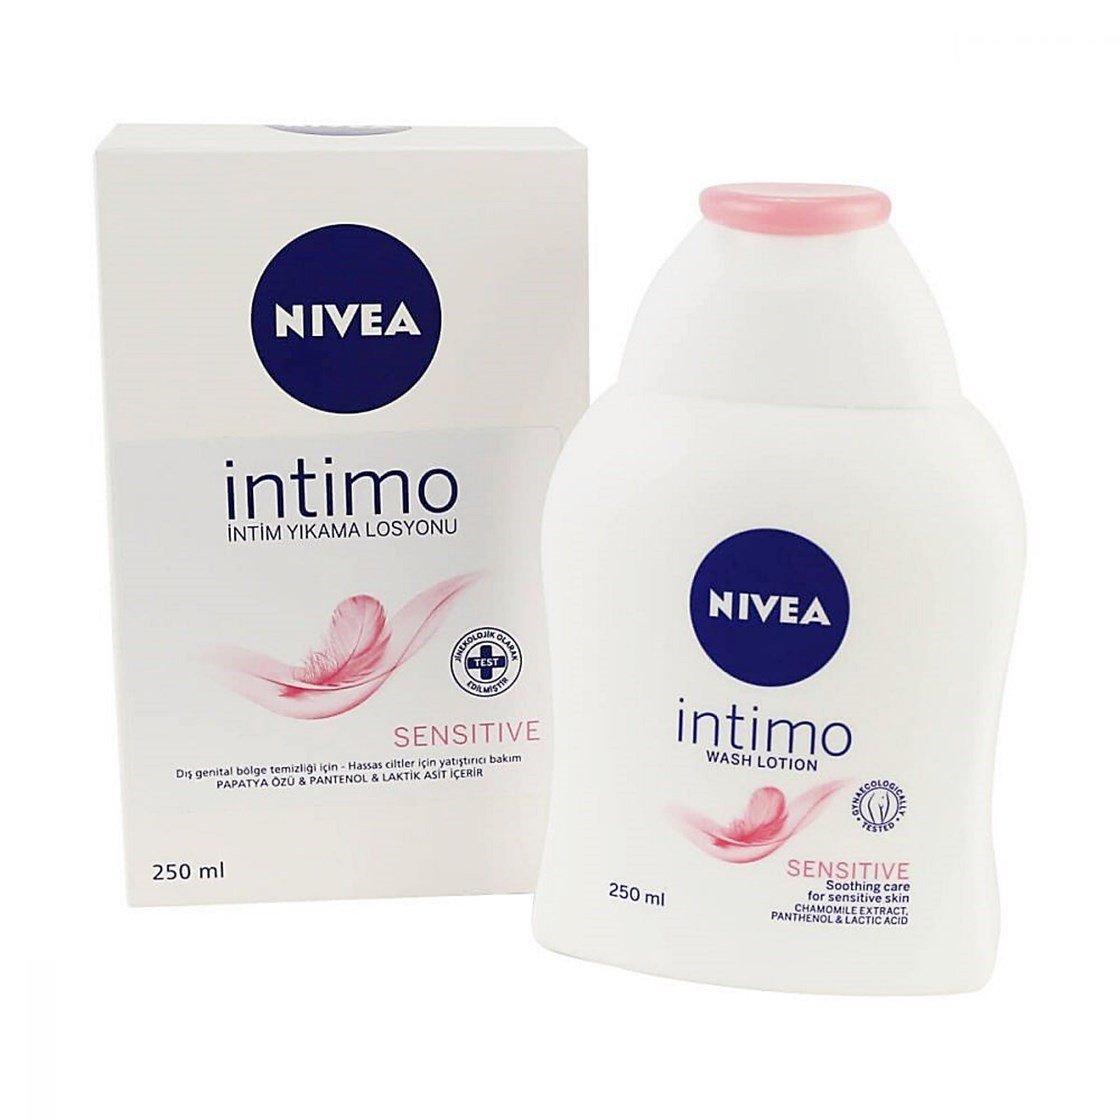 Nivea İntimo Sensitive İntim Yıkama Losyonu 250 ml Ürün ve Fiyatları |  Dermoailem.com